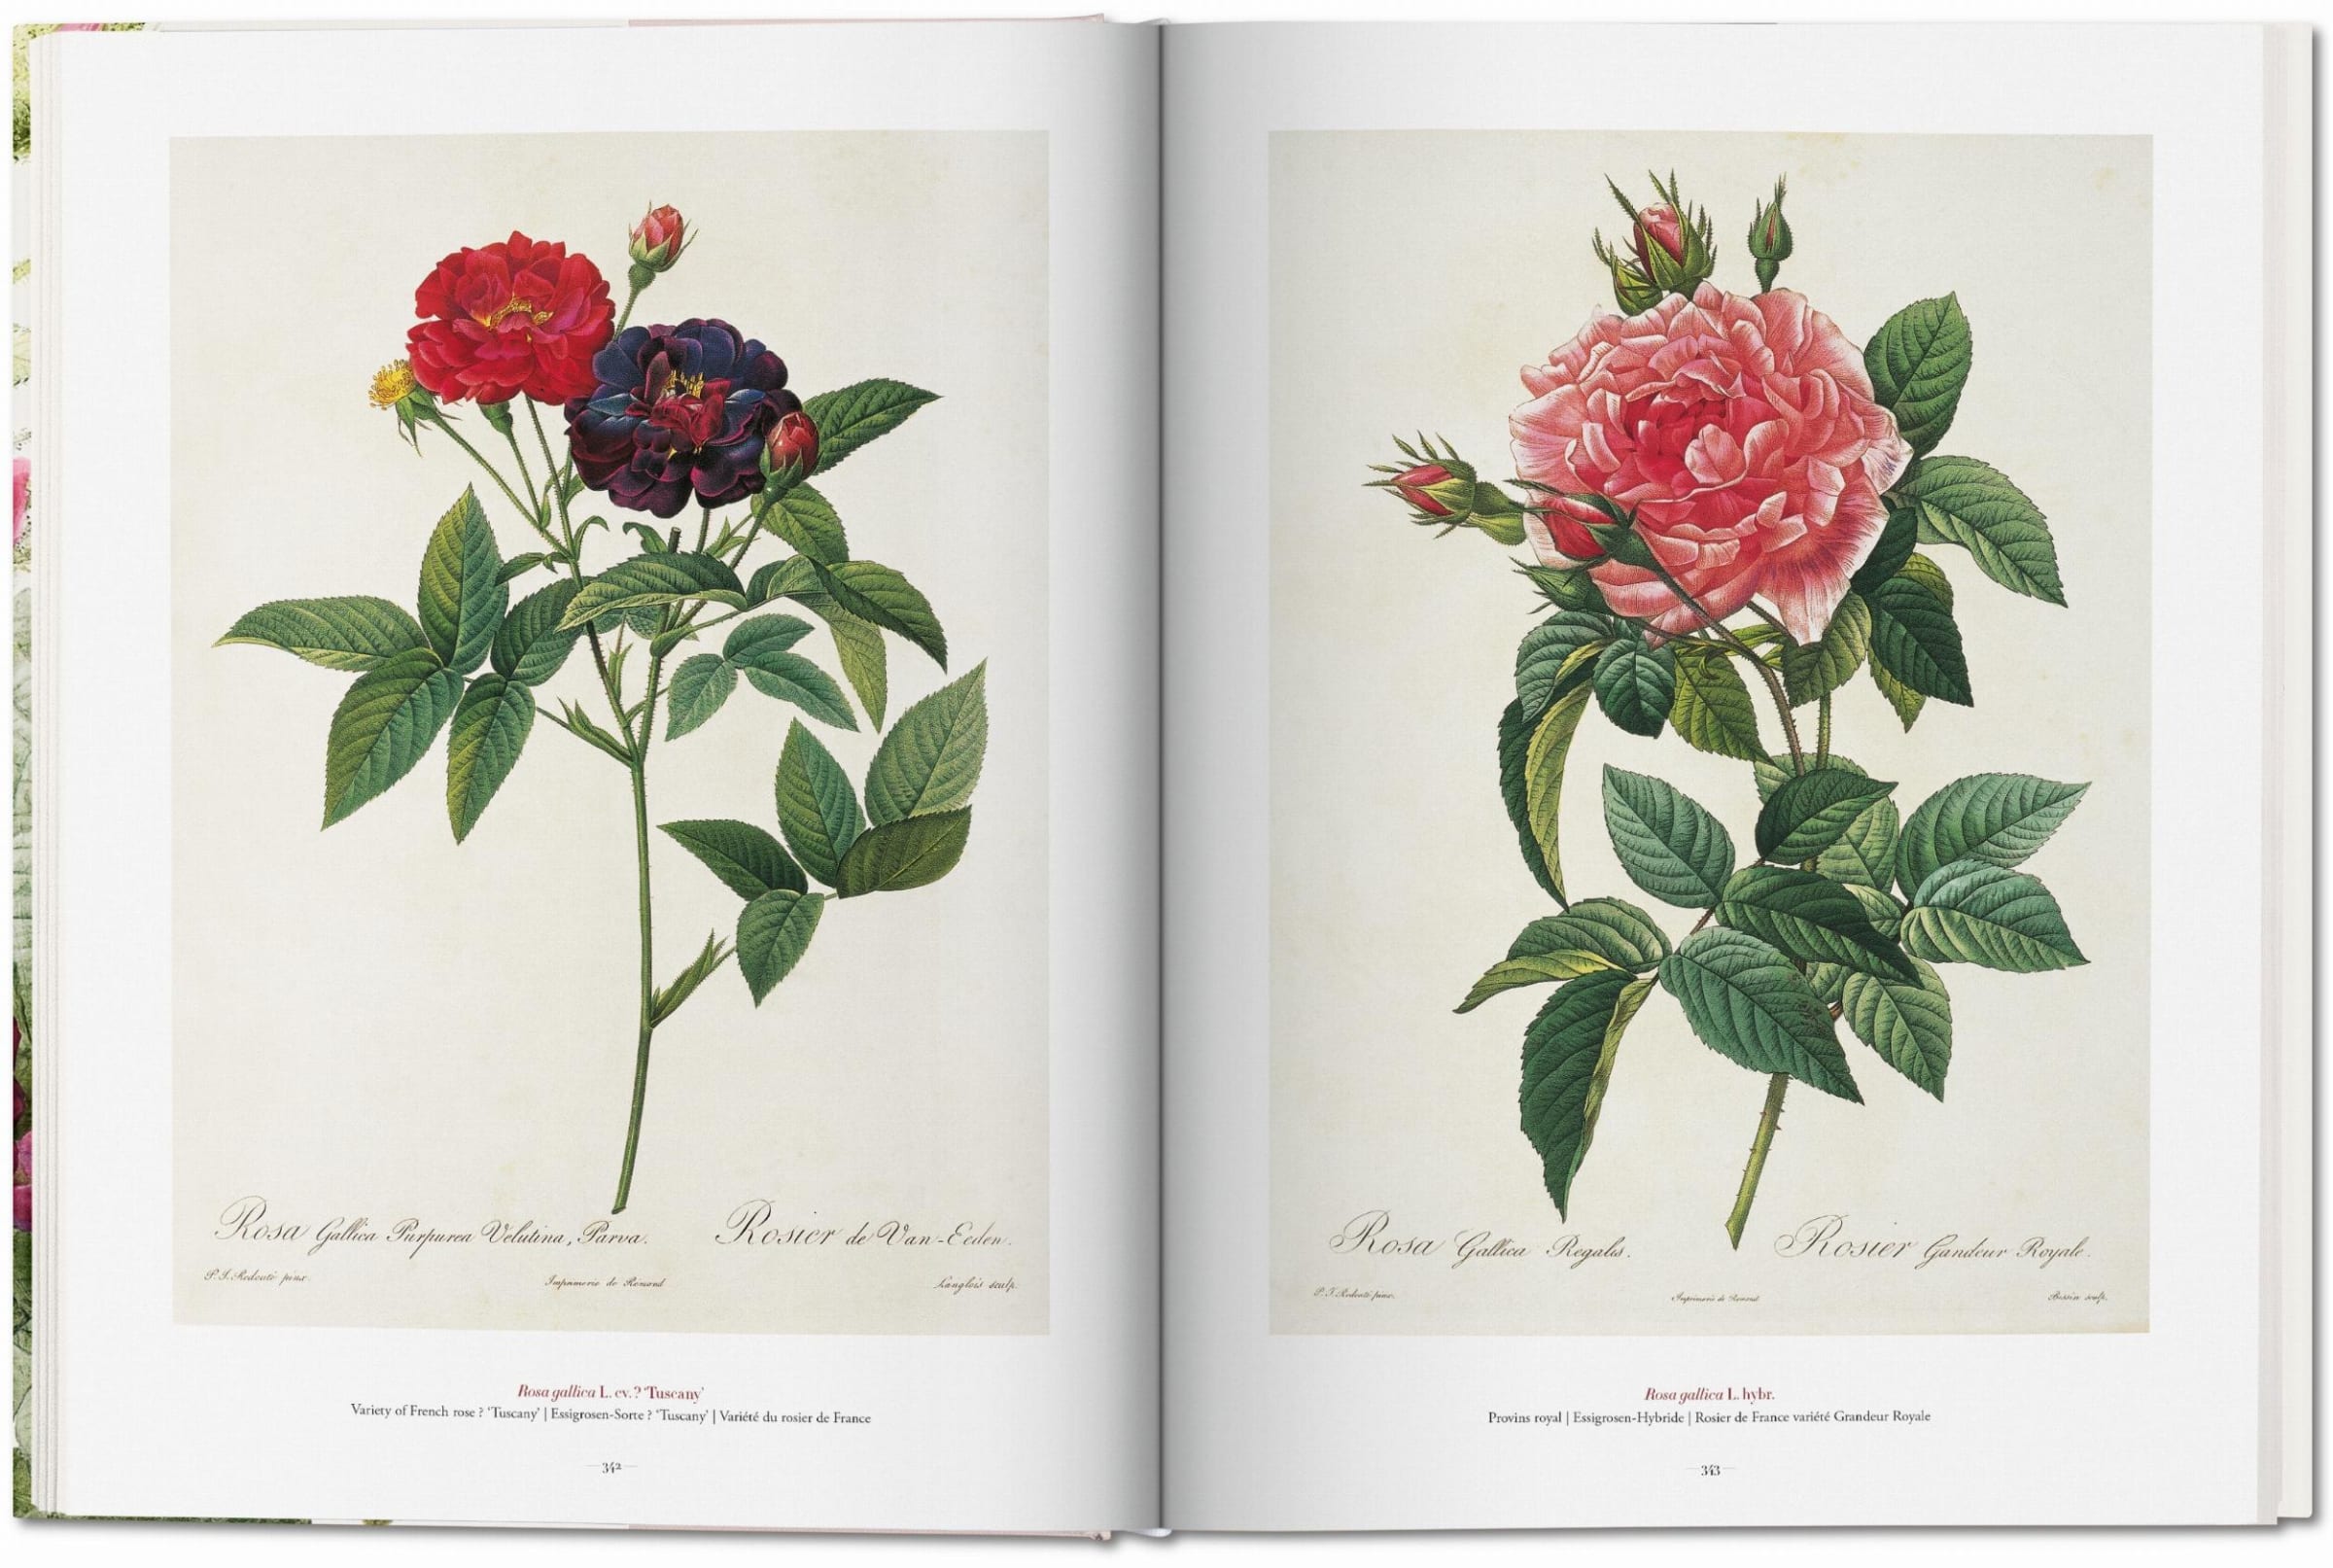 Taschen | Redouté. The Book of Flowers